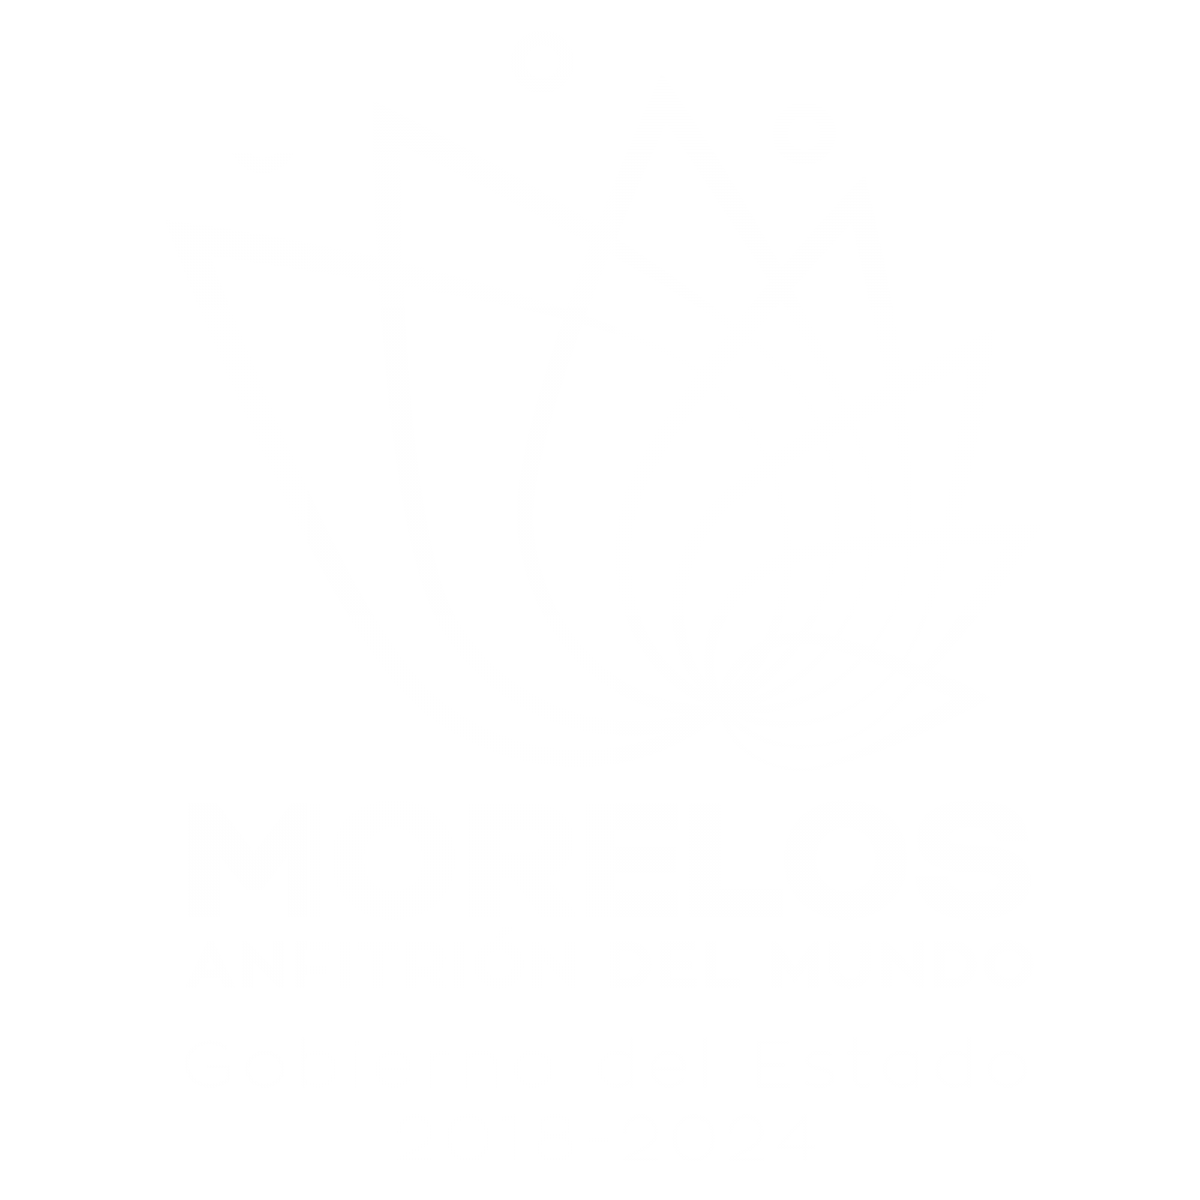 Gobierno del Estado de Morelos